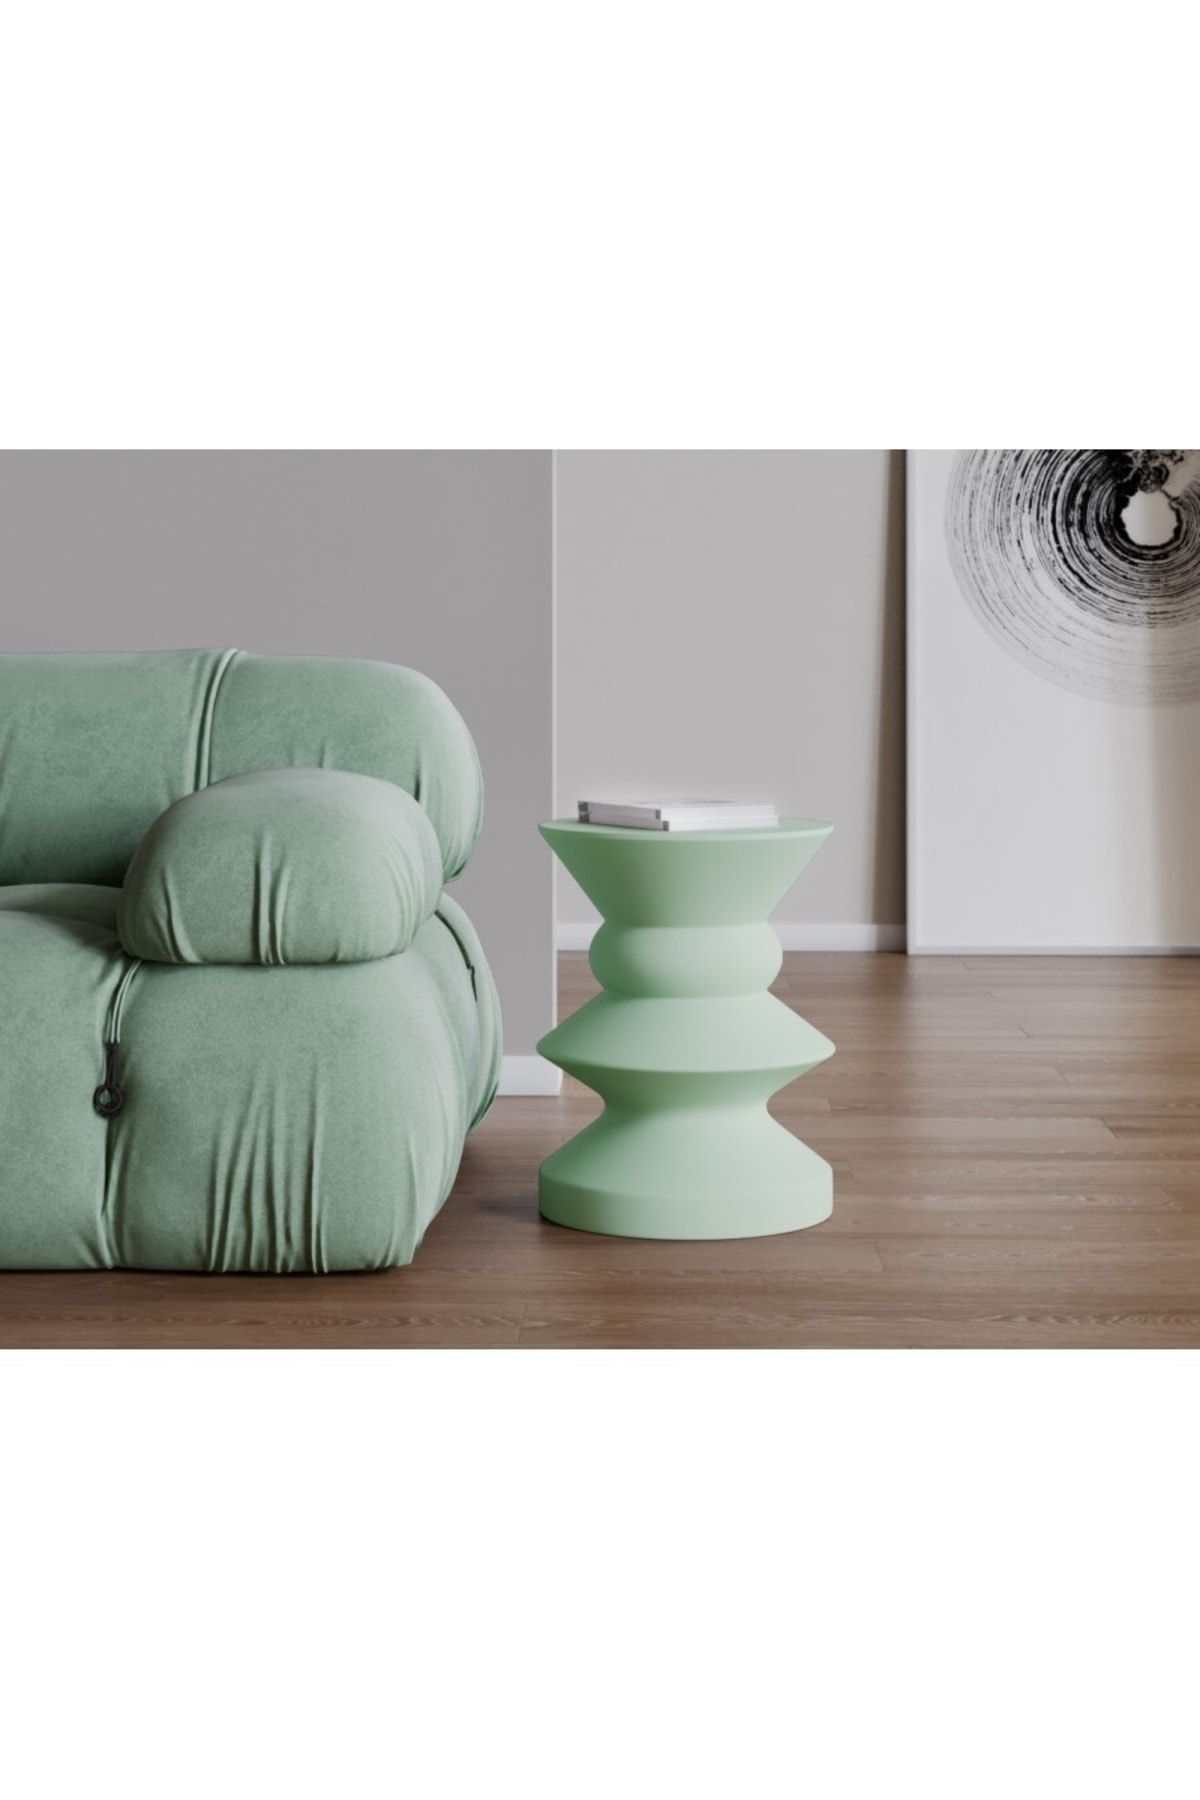 Echo Furniture Adella Haki Yeşil Sehpa